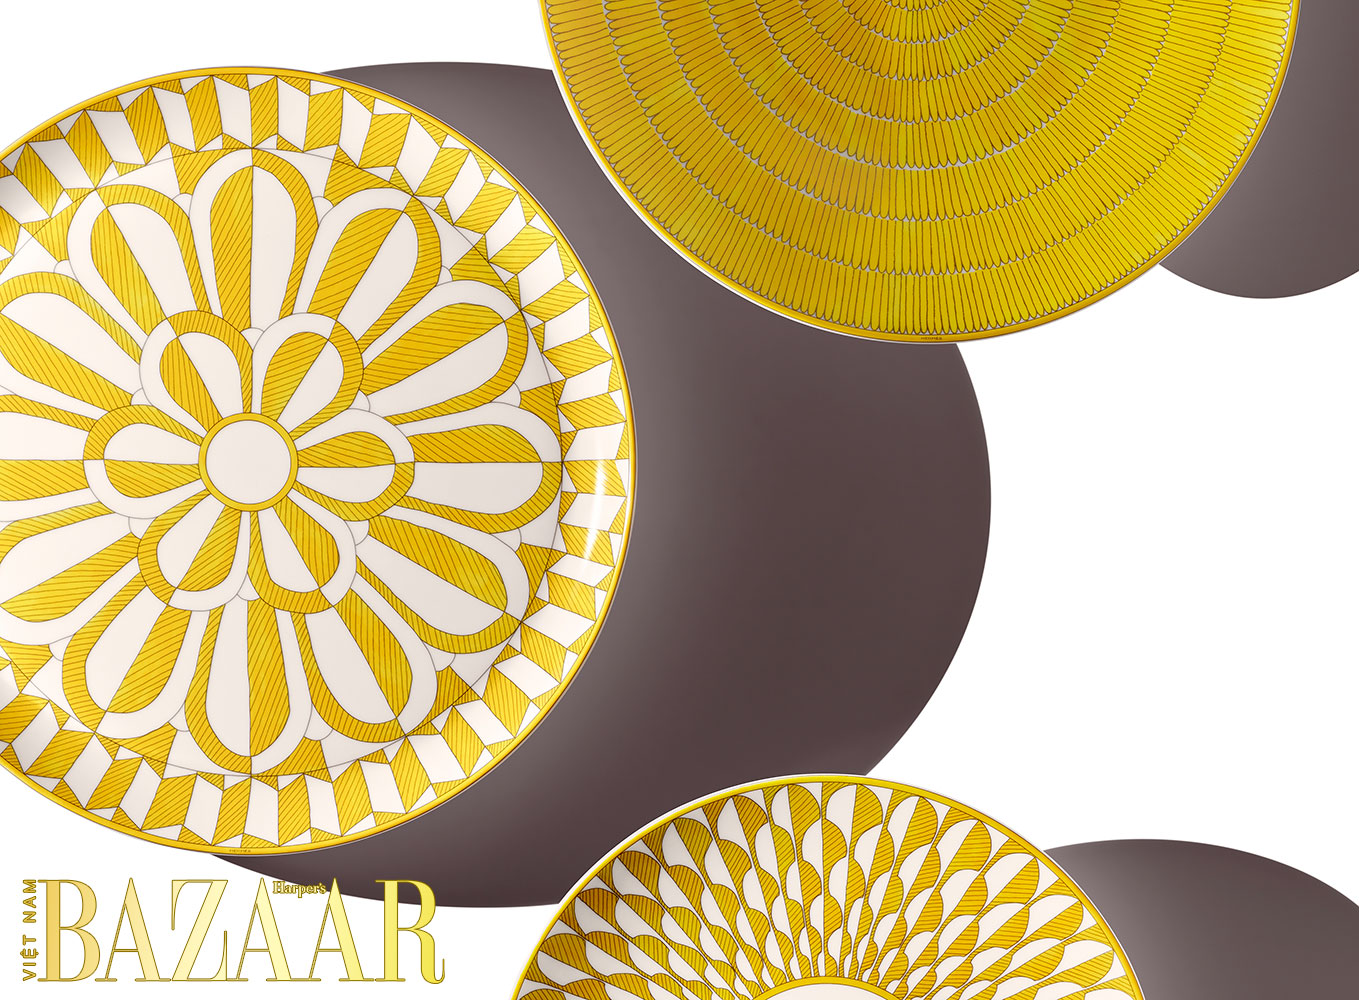 harpers bazaar vietnam do gome su soleil dhermes 2022 04 maud remy lonvis - Mang nắng vàng Art Deco lên bàn tiệc với bộ đồ gốm sứ Soleil d’Hermès